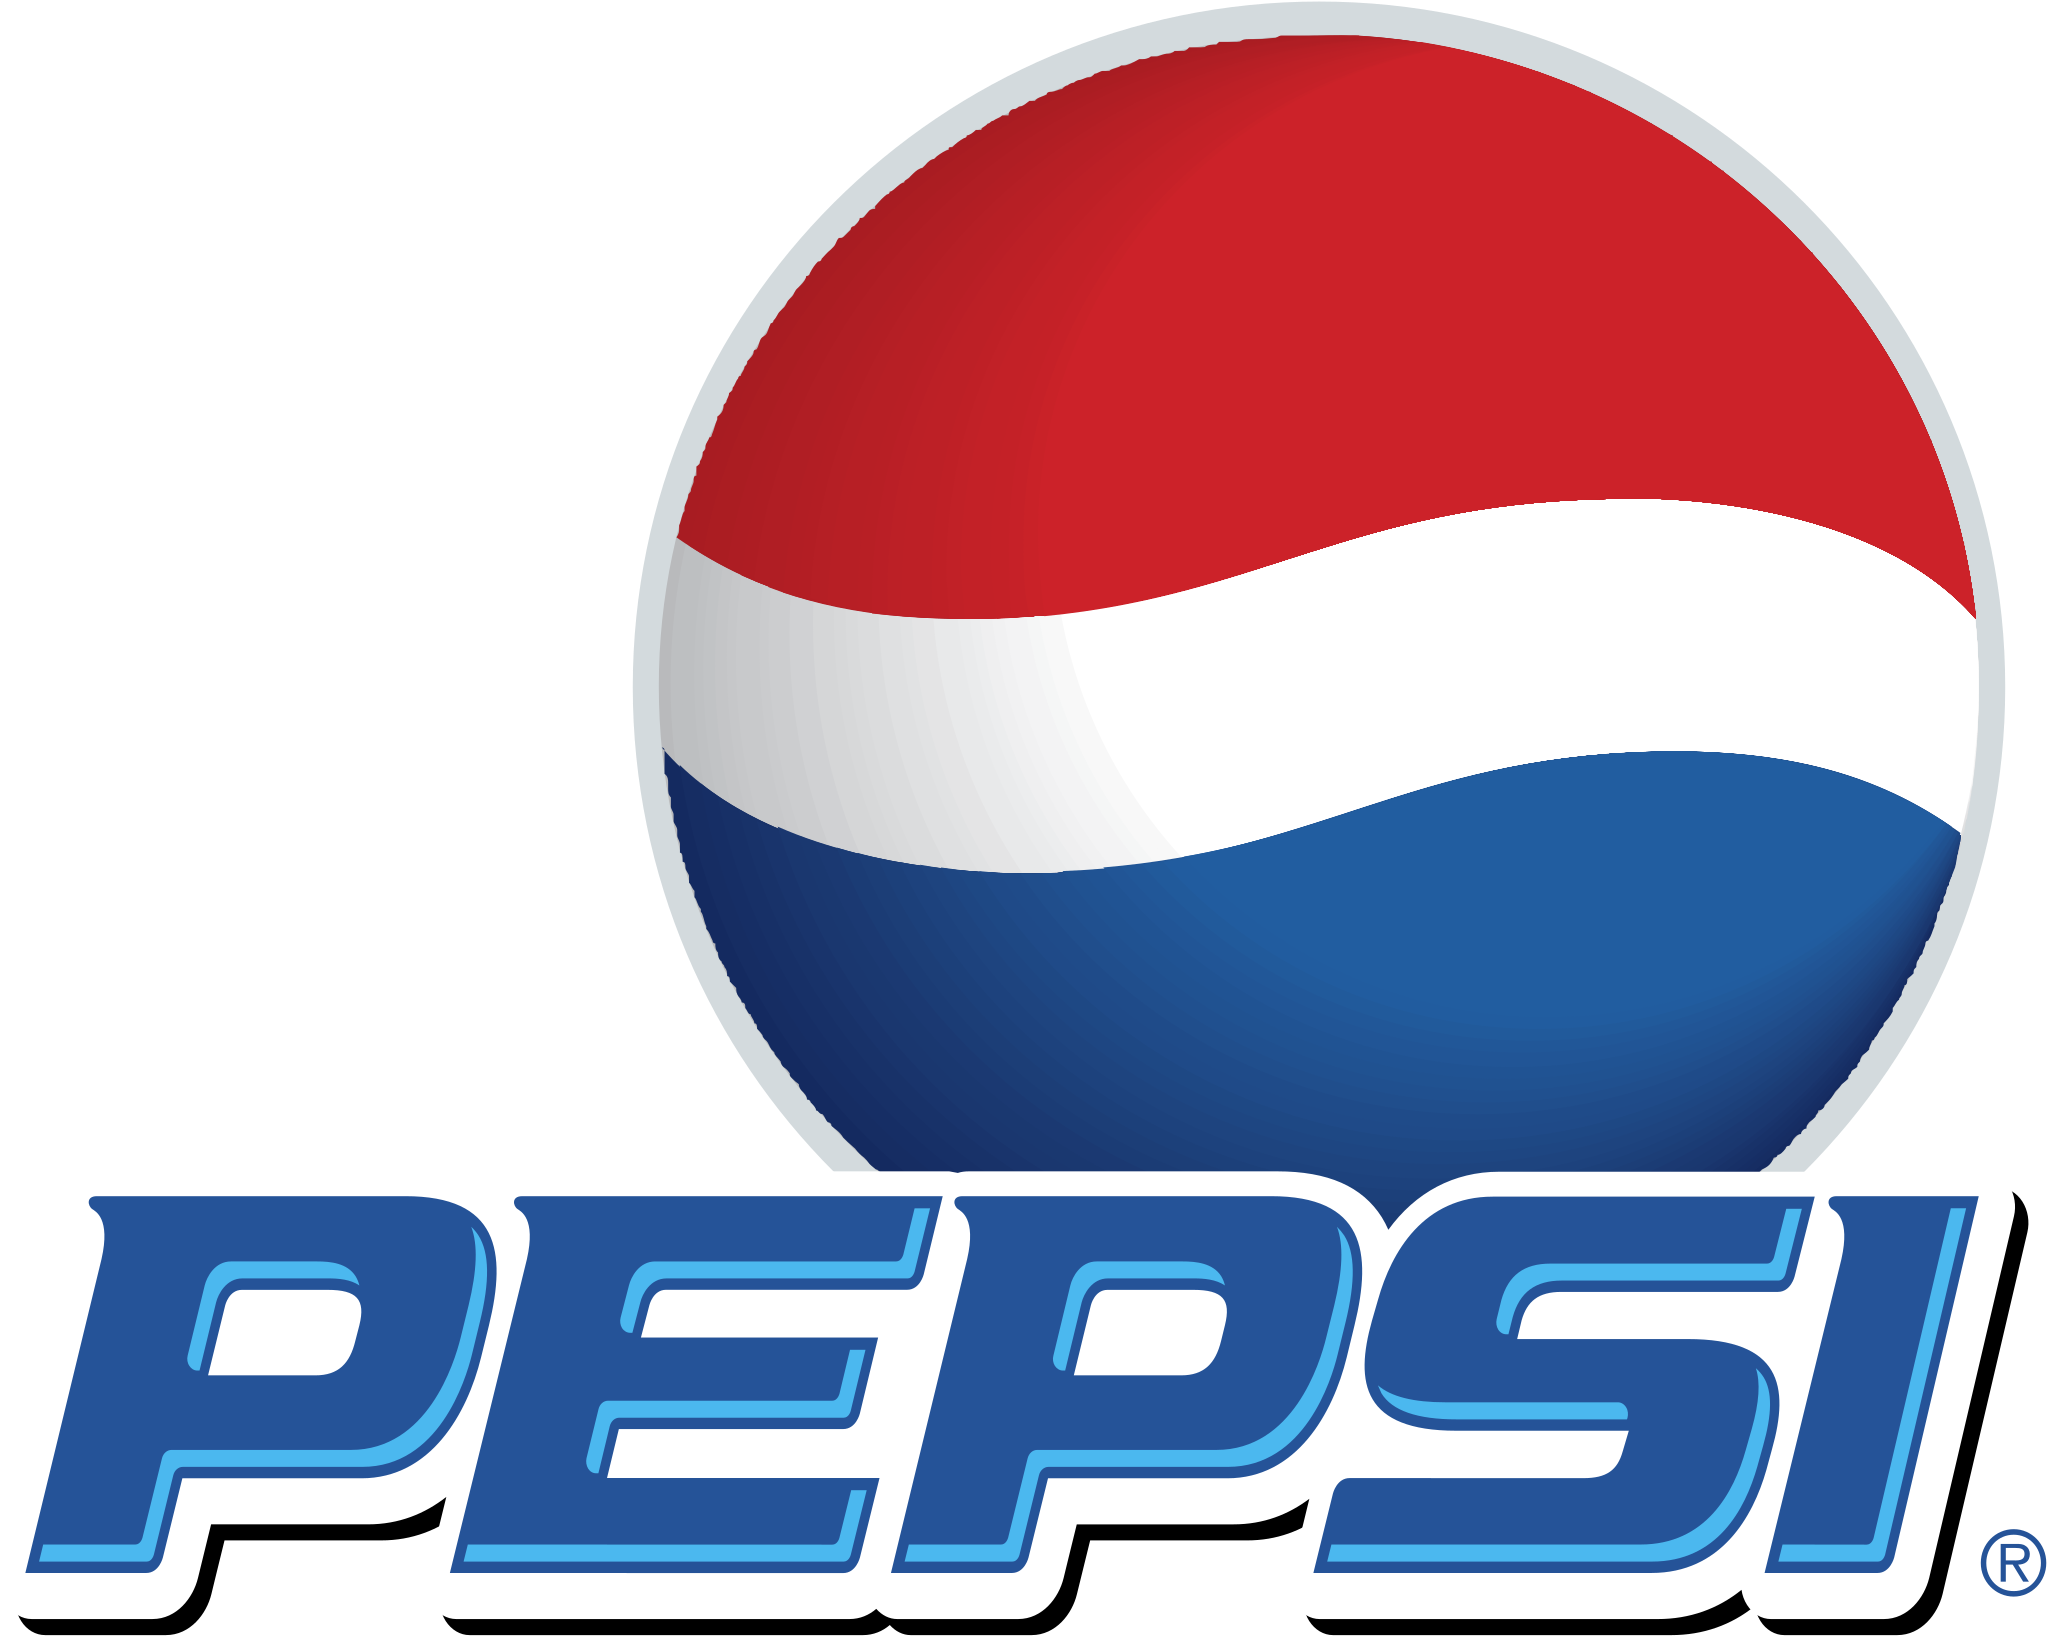 Pepsi Png 2047 X 1636